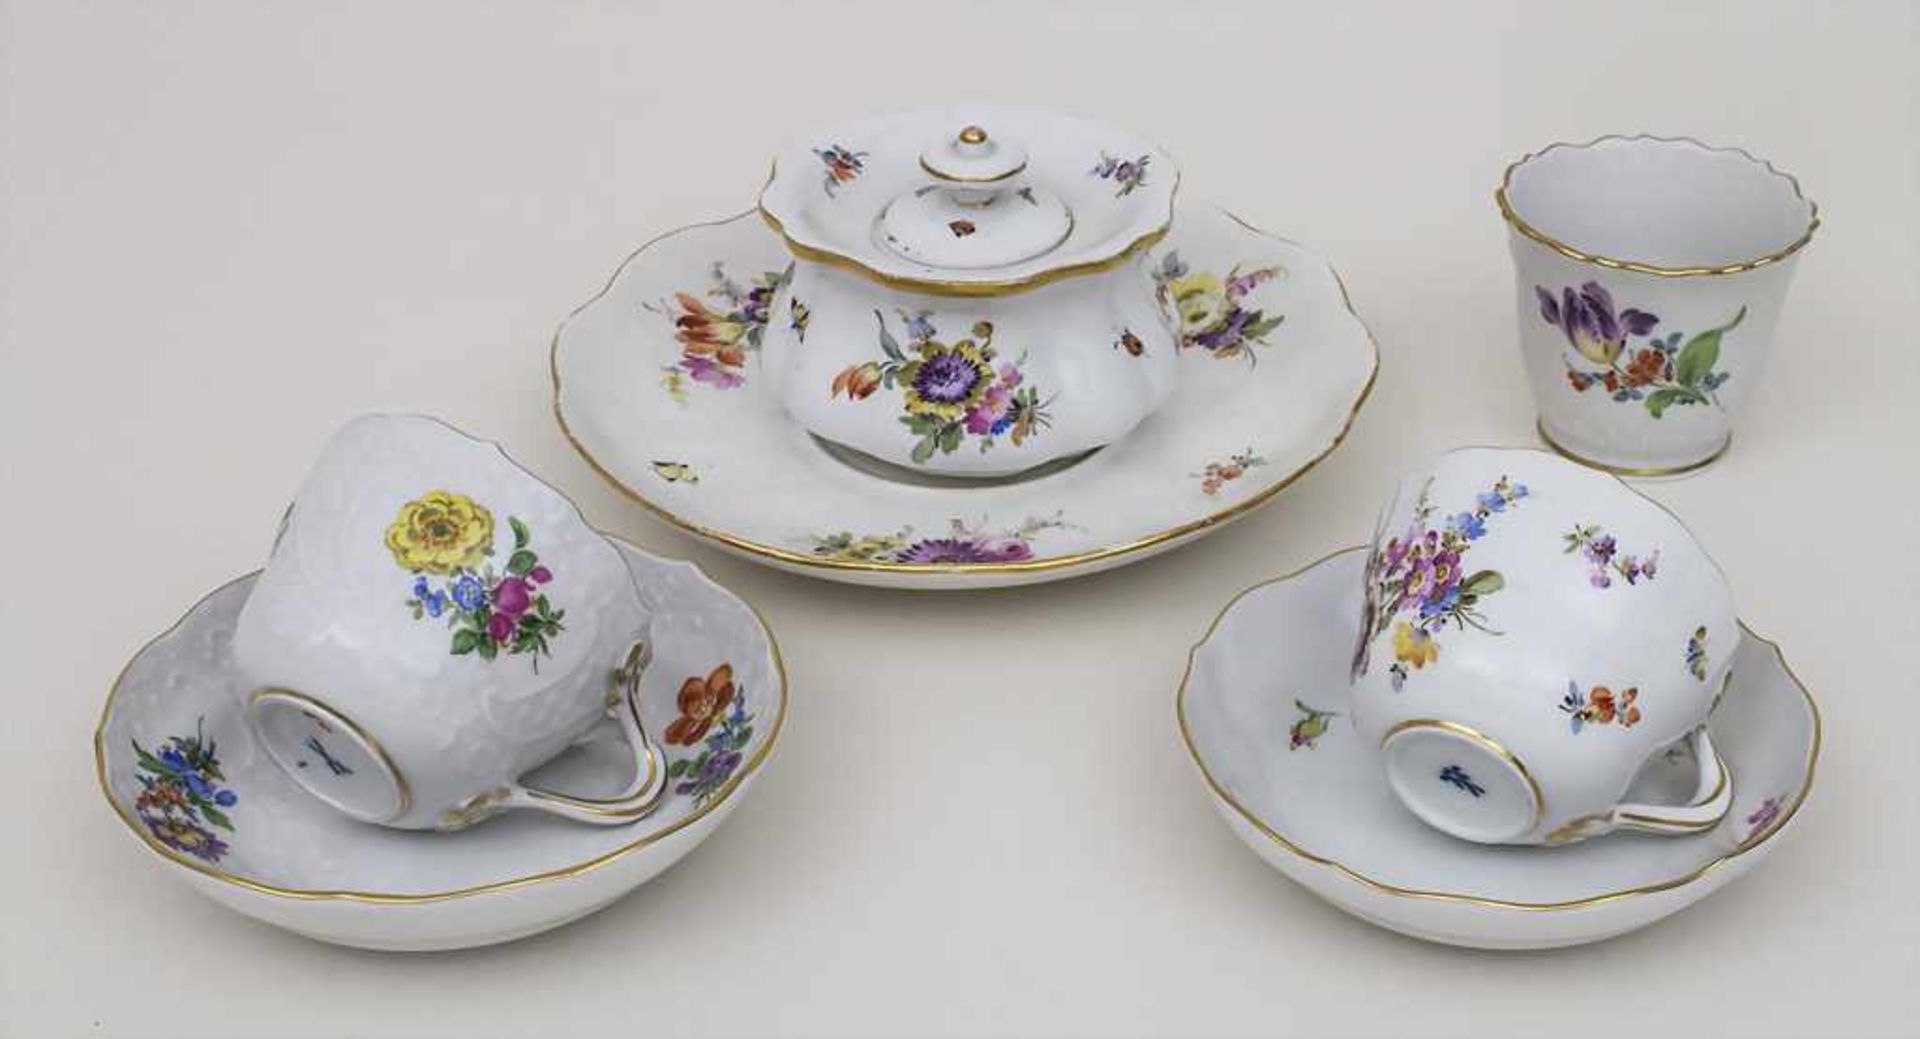 Vierteiliges Konvolut Porzellane mit Blumenmalerei / A 4 piece set of porcelain with flowers,